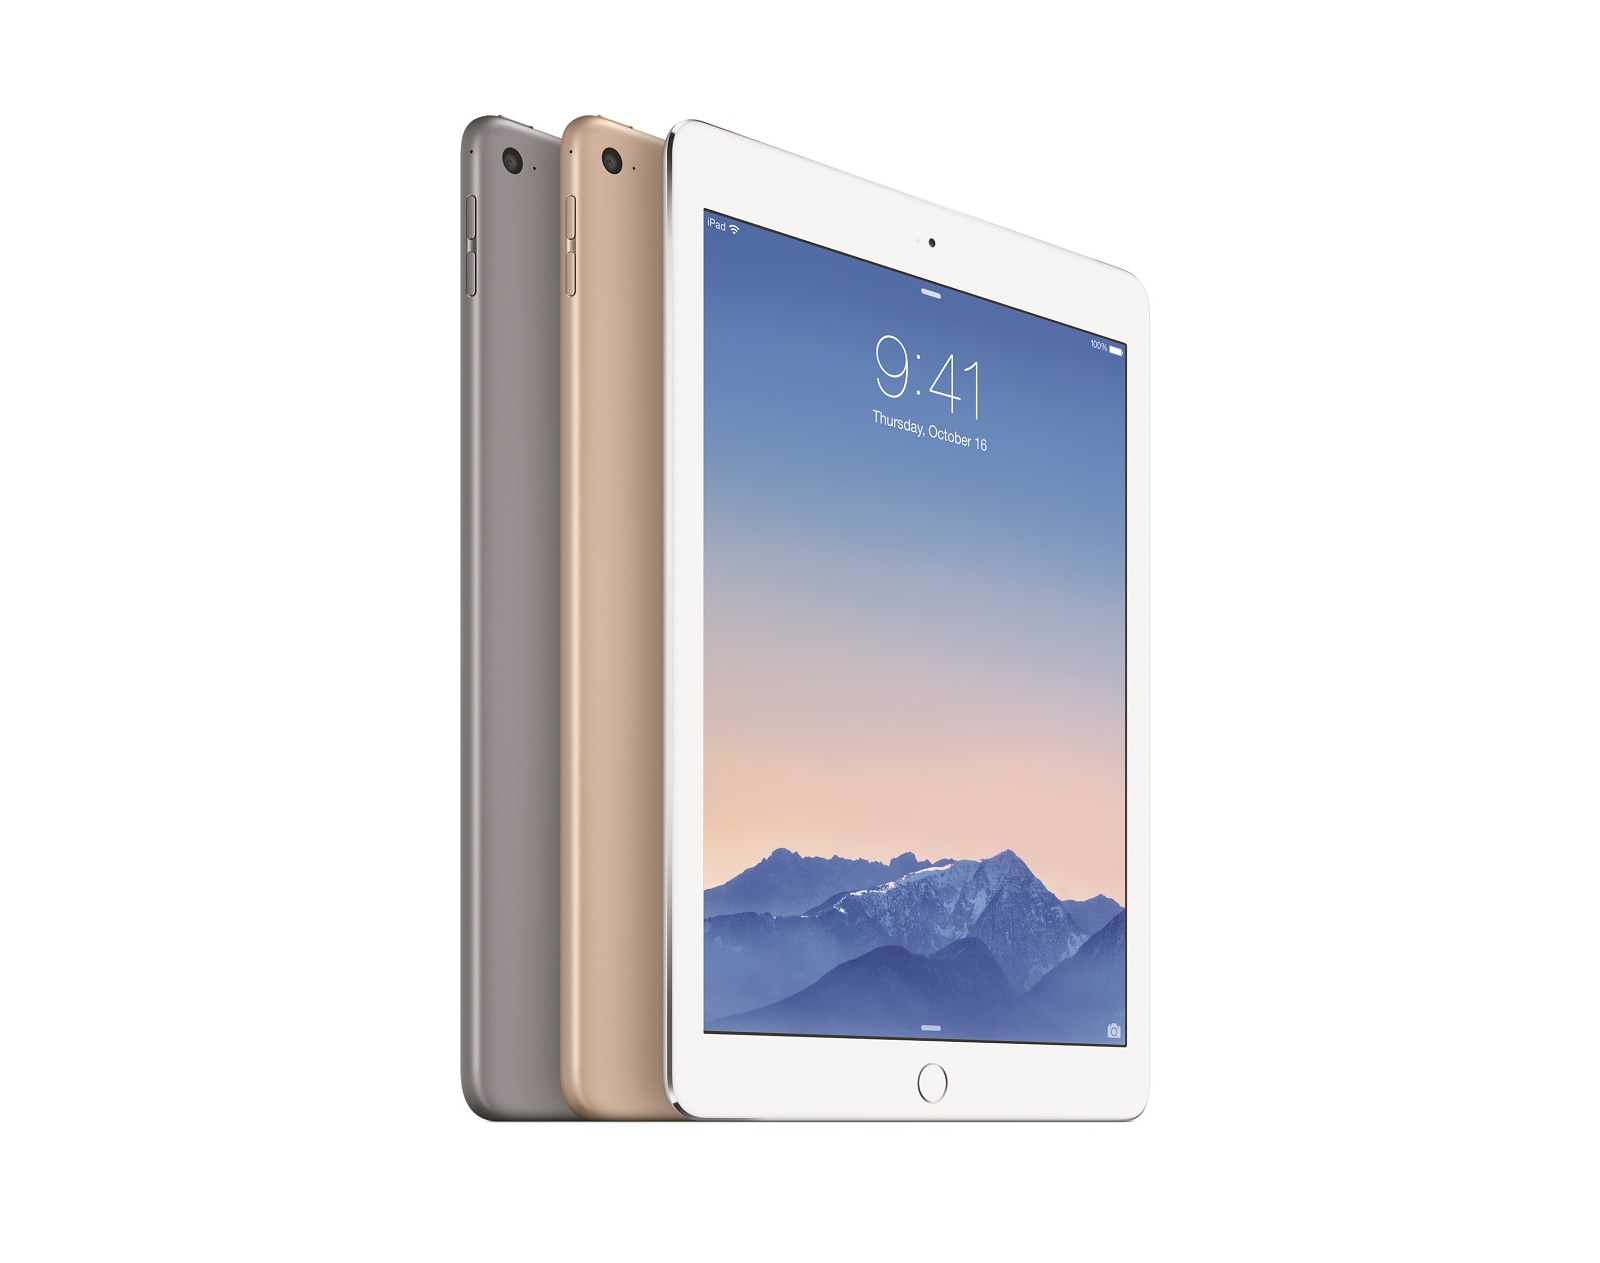 MH182TU/A Apple iPad Air 2 64GB Wi-Fi 9,7'' Gold İOS 8 Tablet PC